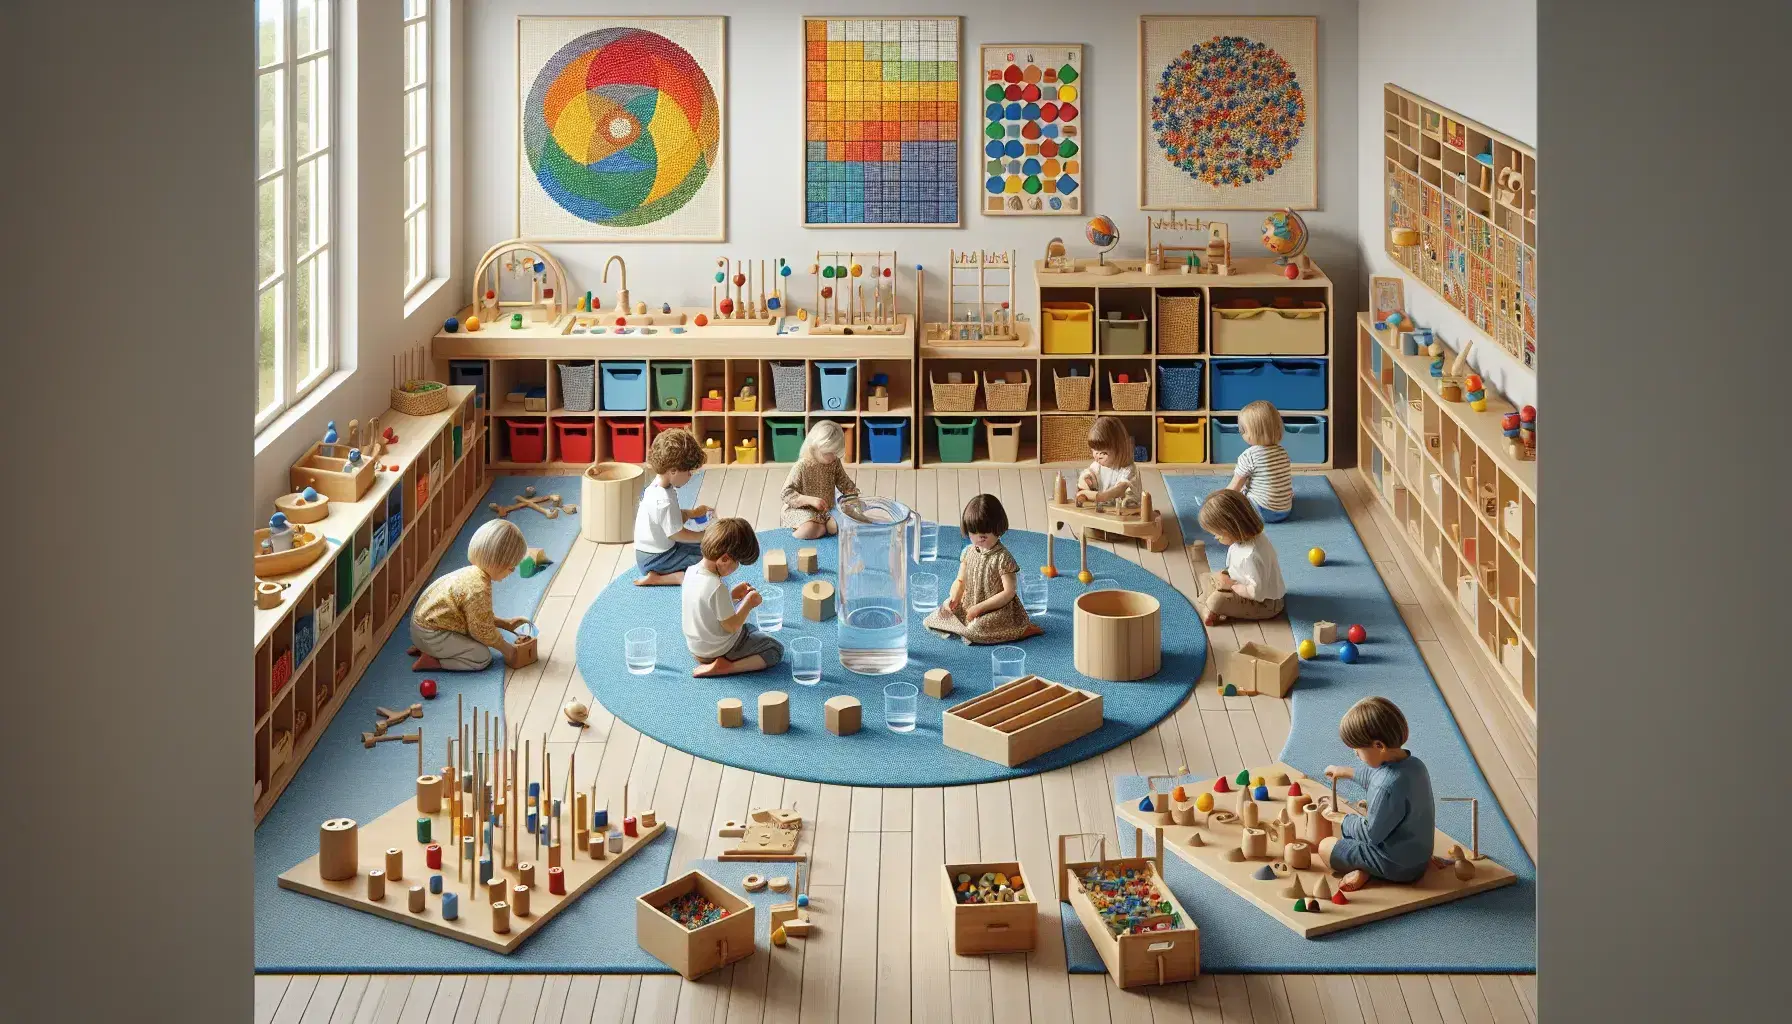 Aula Montessori colorata con bambini impegnati in attività pratiche, insegnante osserva, mobili bassi con materiali didattici e pareti decorate.